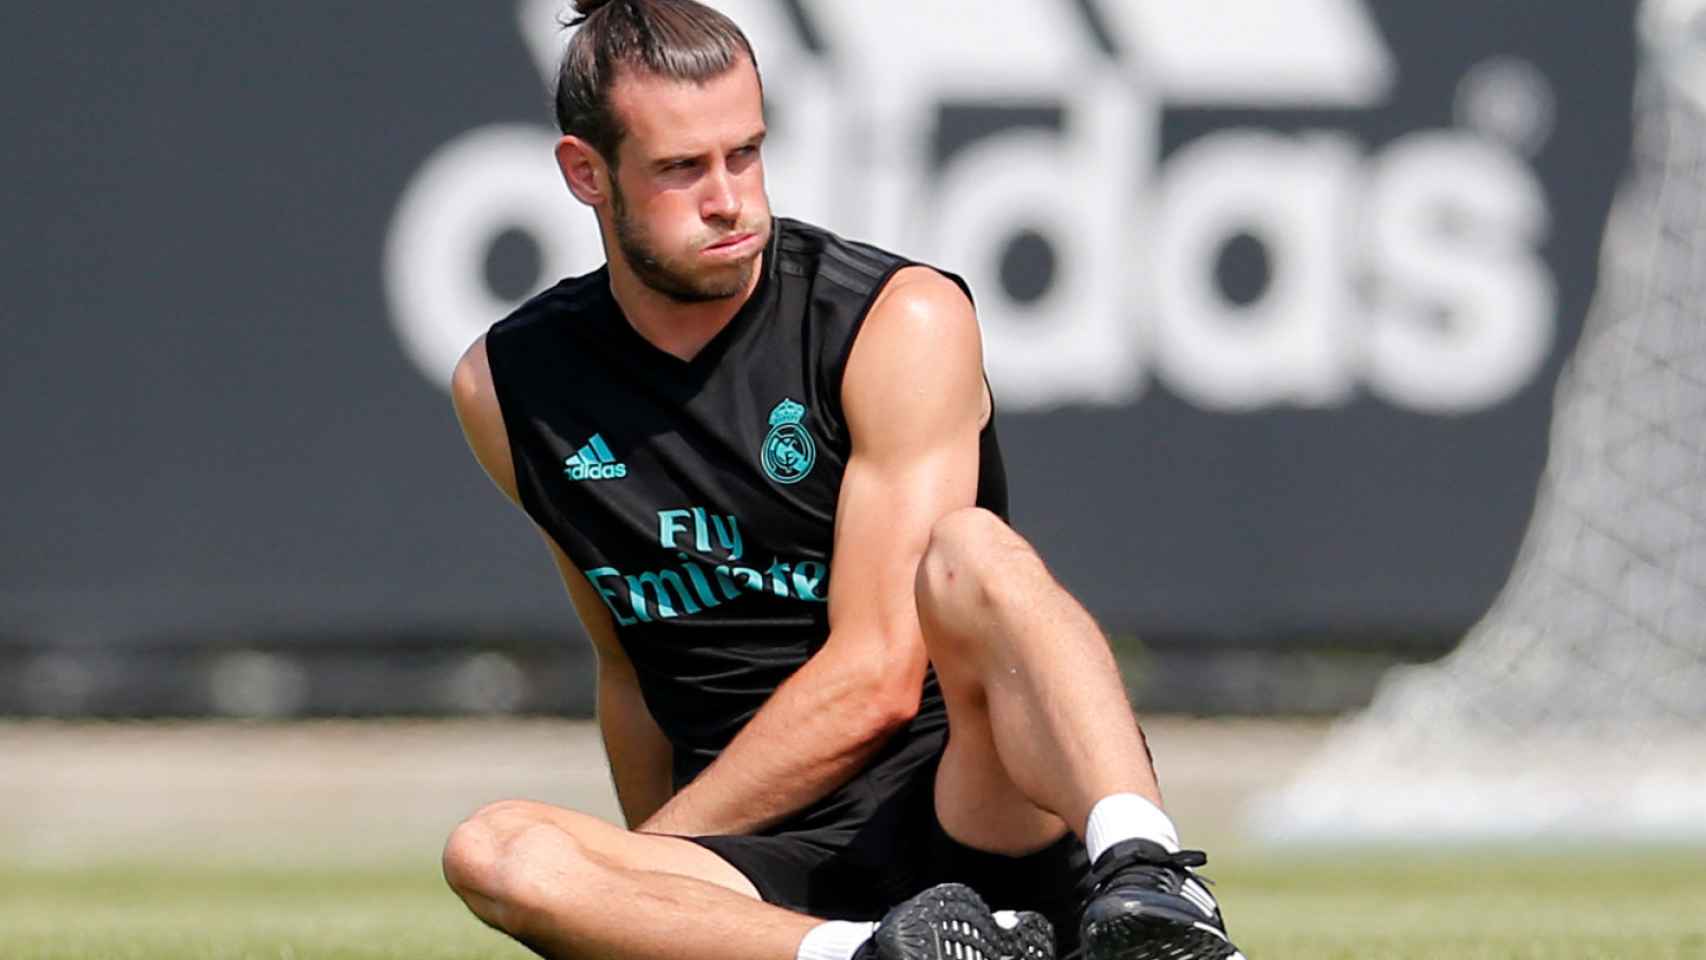 Gareth Bale, durante un entrenamiento de pretemporada del Real Madrid.